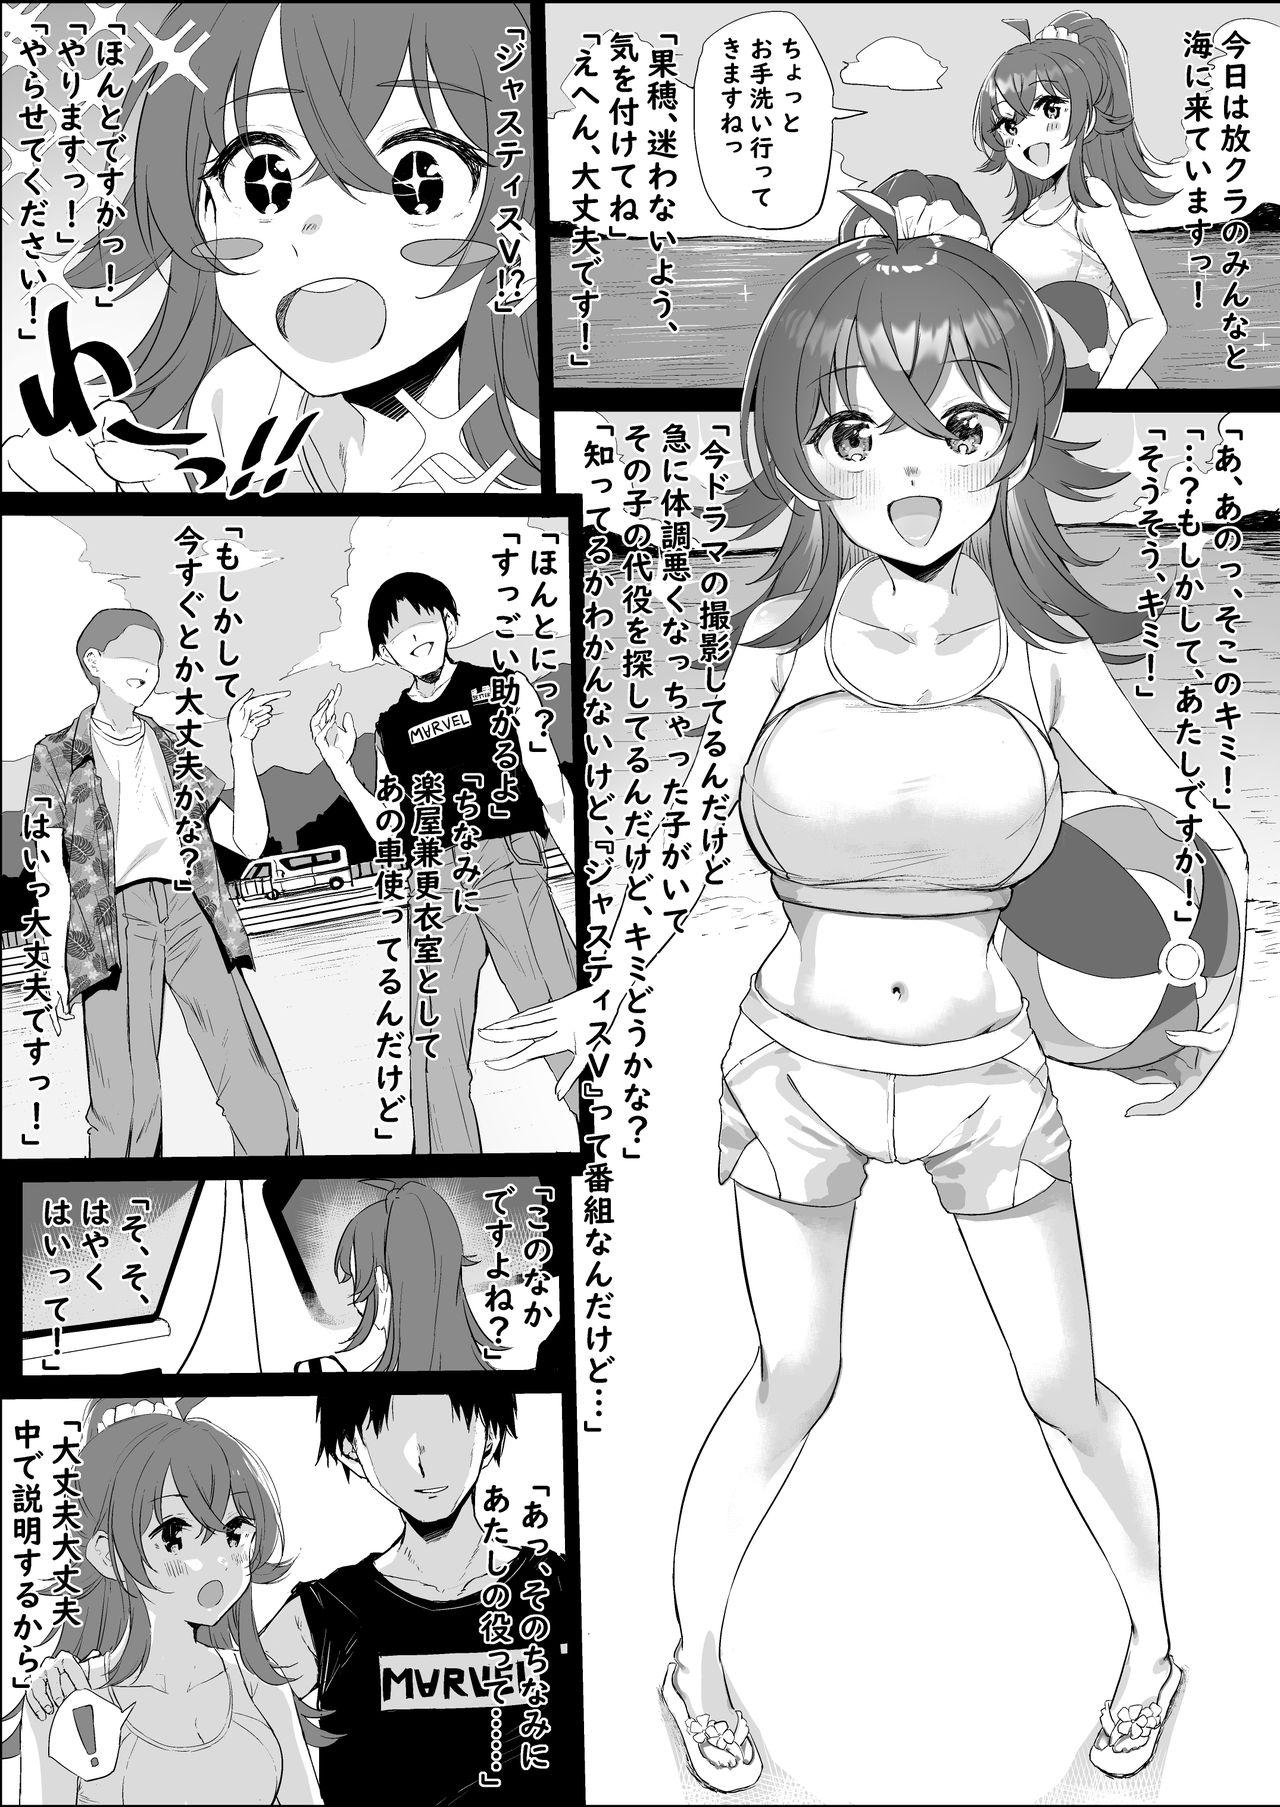 Komiya Kaho Manga 1